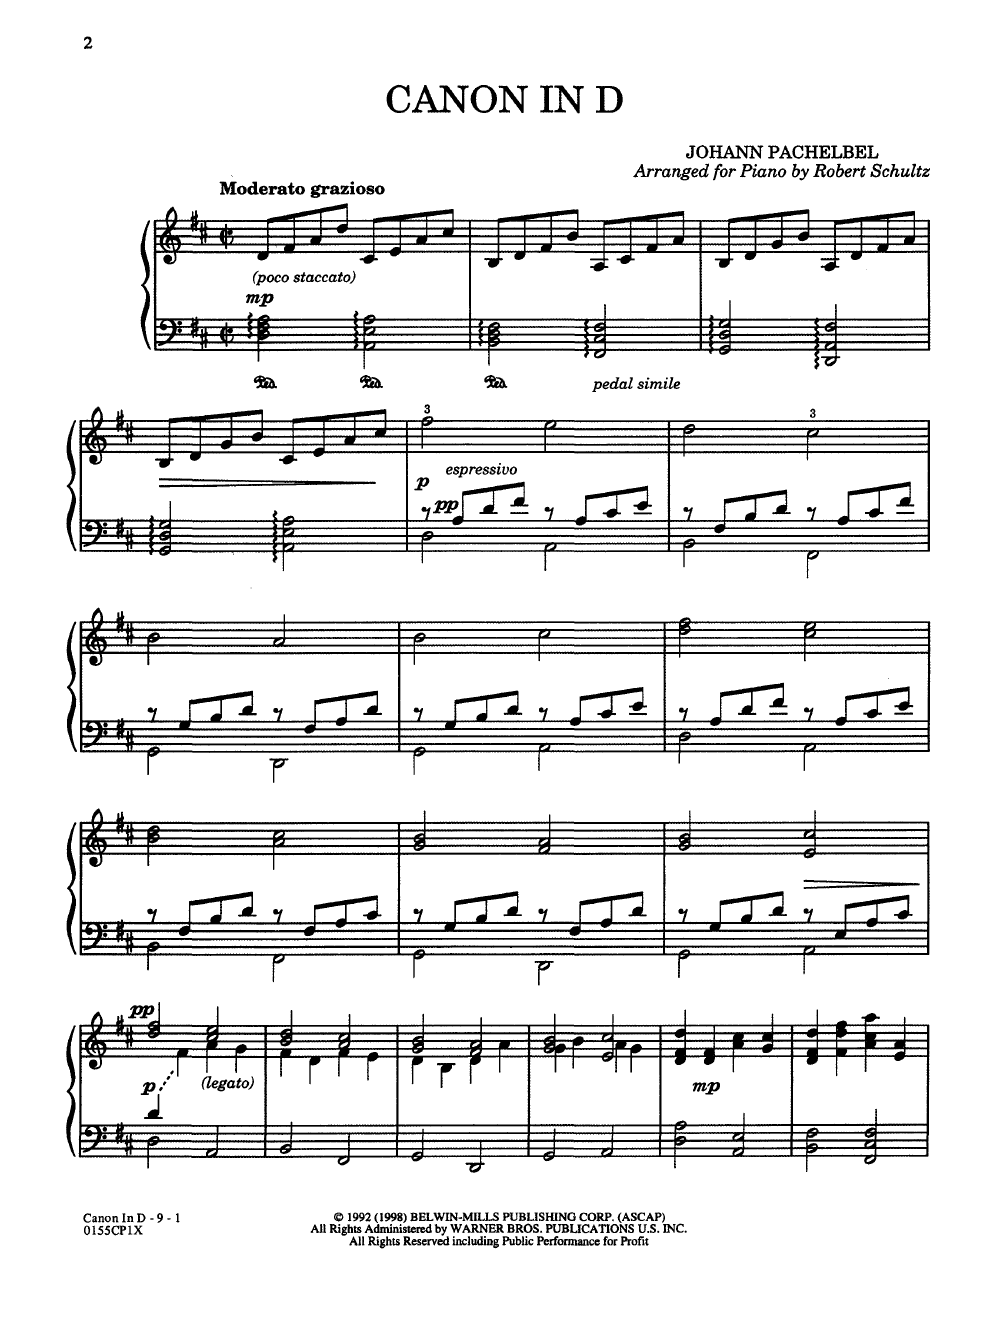 Canon in D by Johann Pachelbel/arr. Schultz| J.W. Pepper Sheet Music